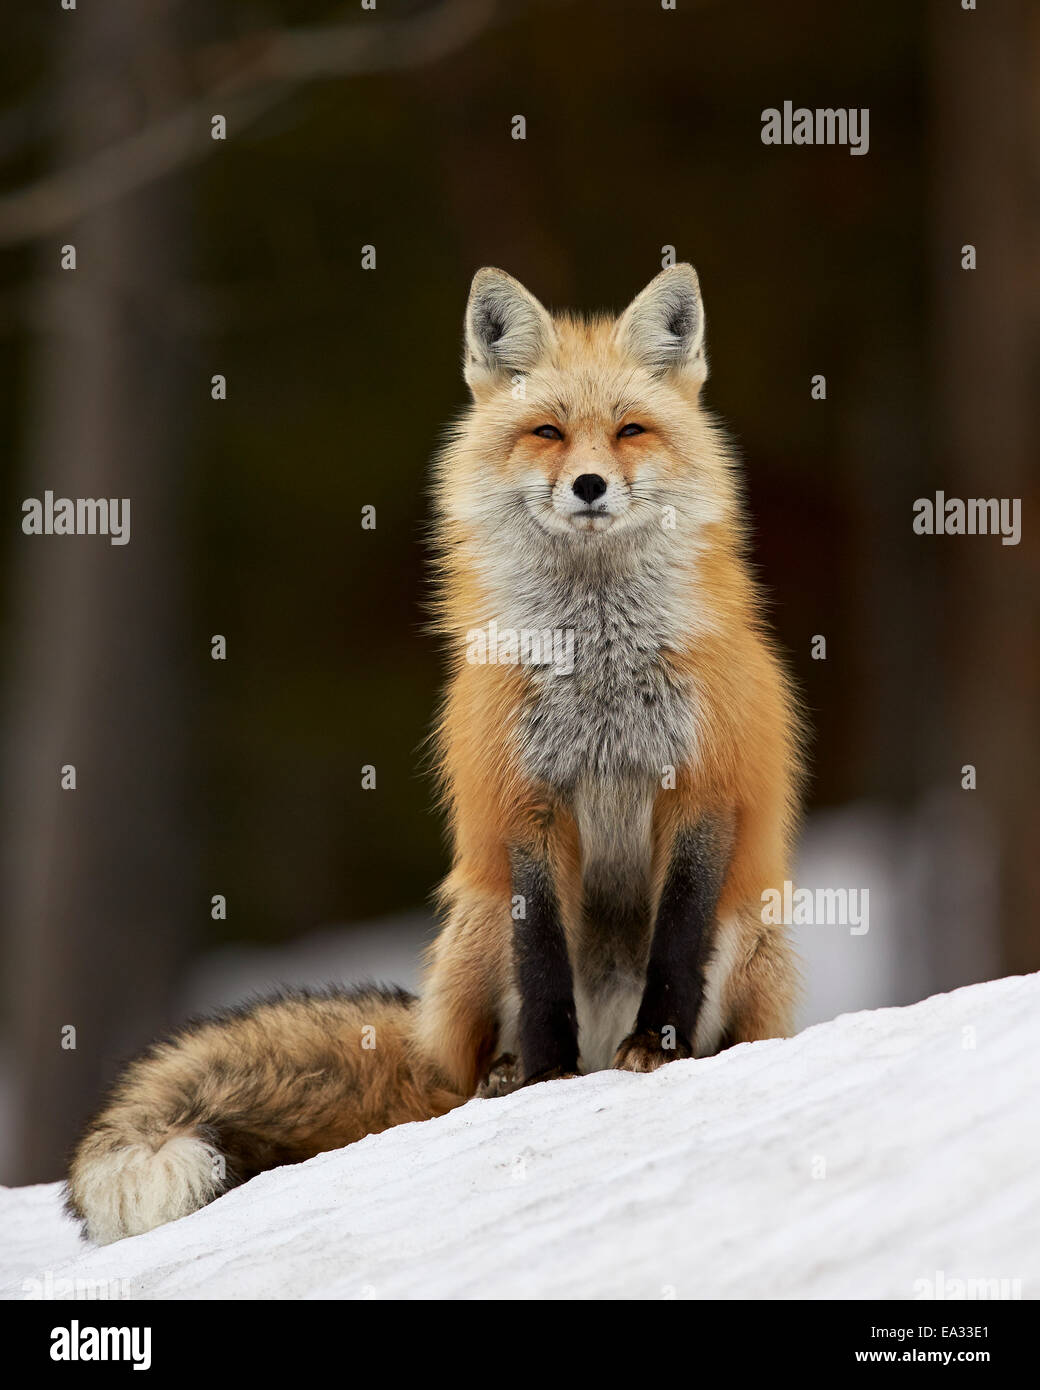 Le renard roux (Vulpes vulpes) (Vulpes fulva) dans la neige, Parc National de Grand Teton, Wyoming, États-Unis d'Amérique, Amérique du Nord Banque D'Images